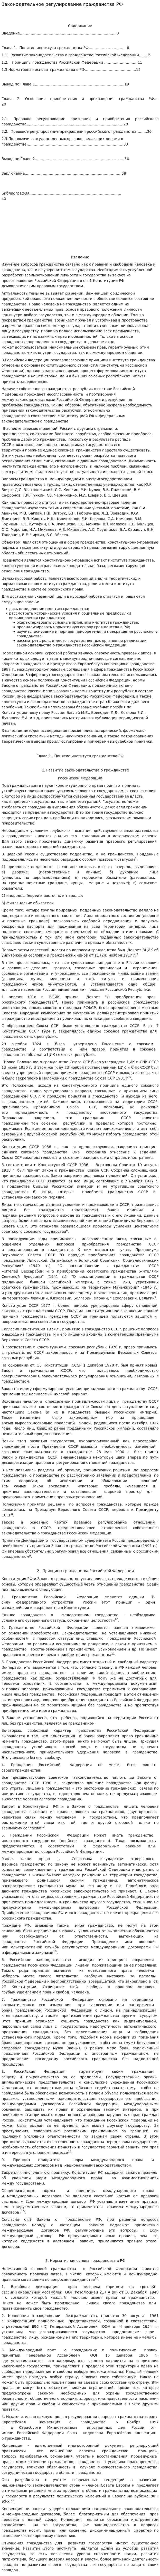 Законодательное регулирование гражданства РФ